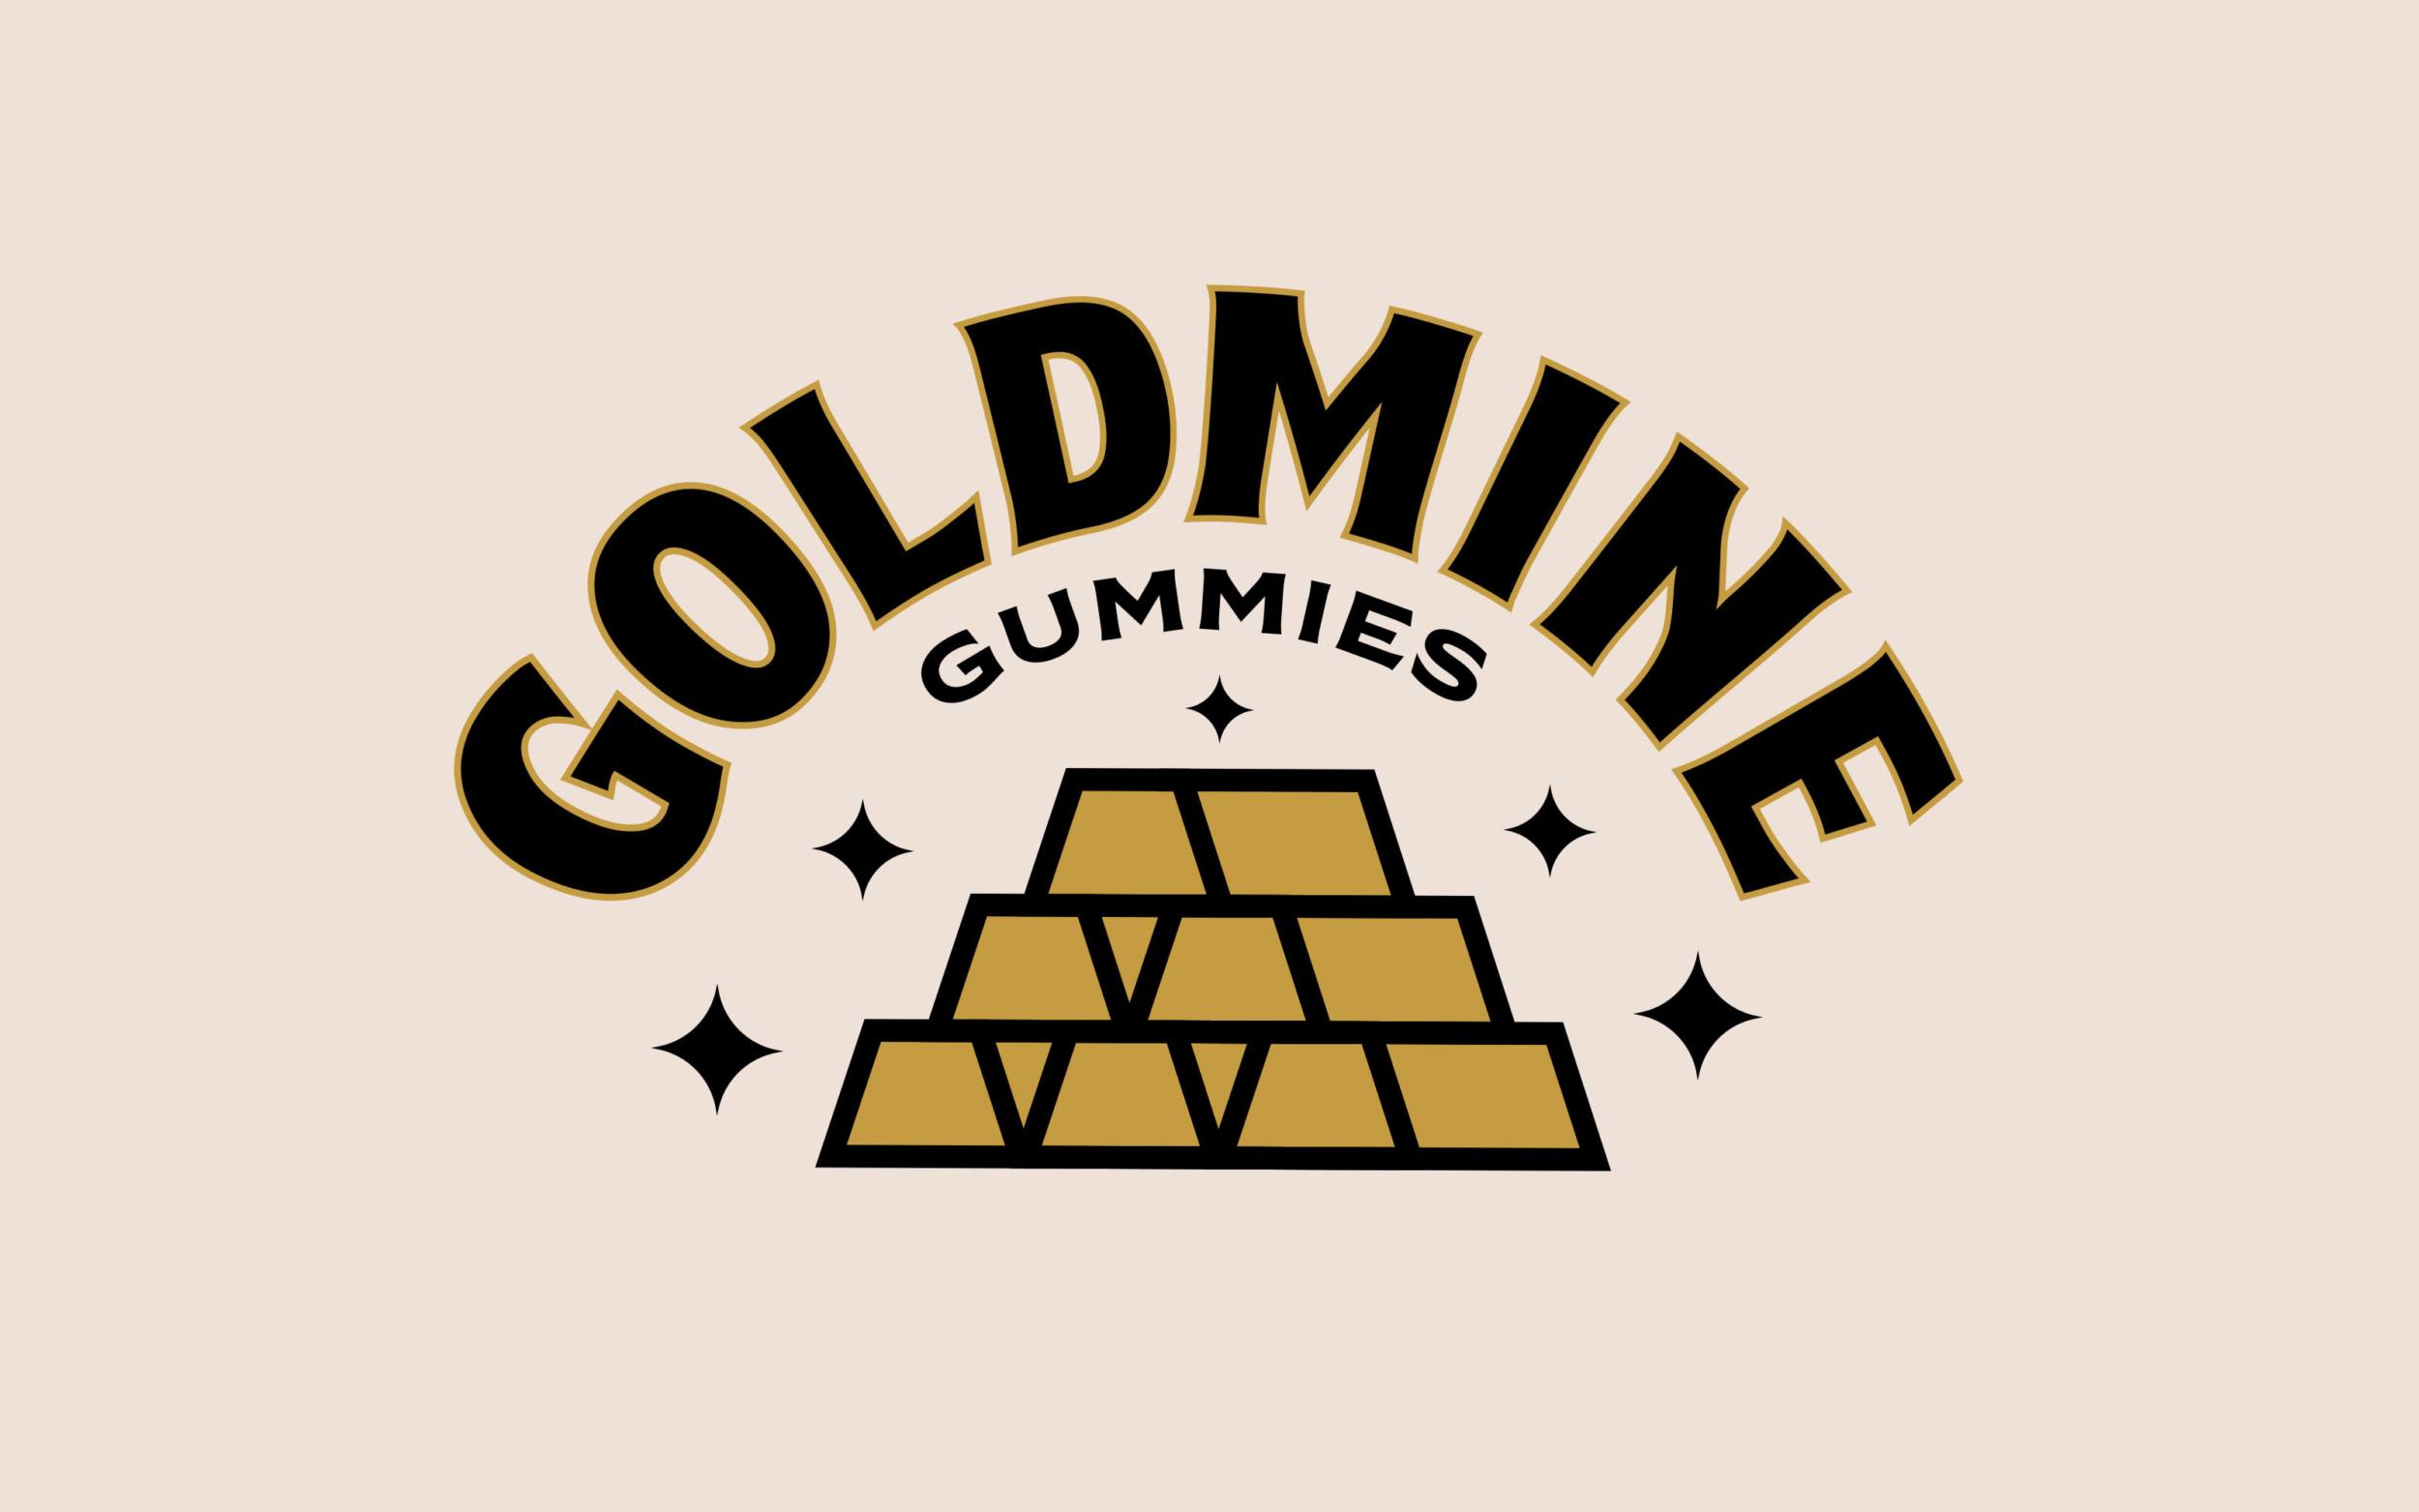 GoldMine Logo PNG Transparent & SVG Vector - Freebie Supply